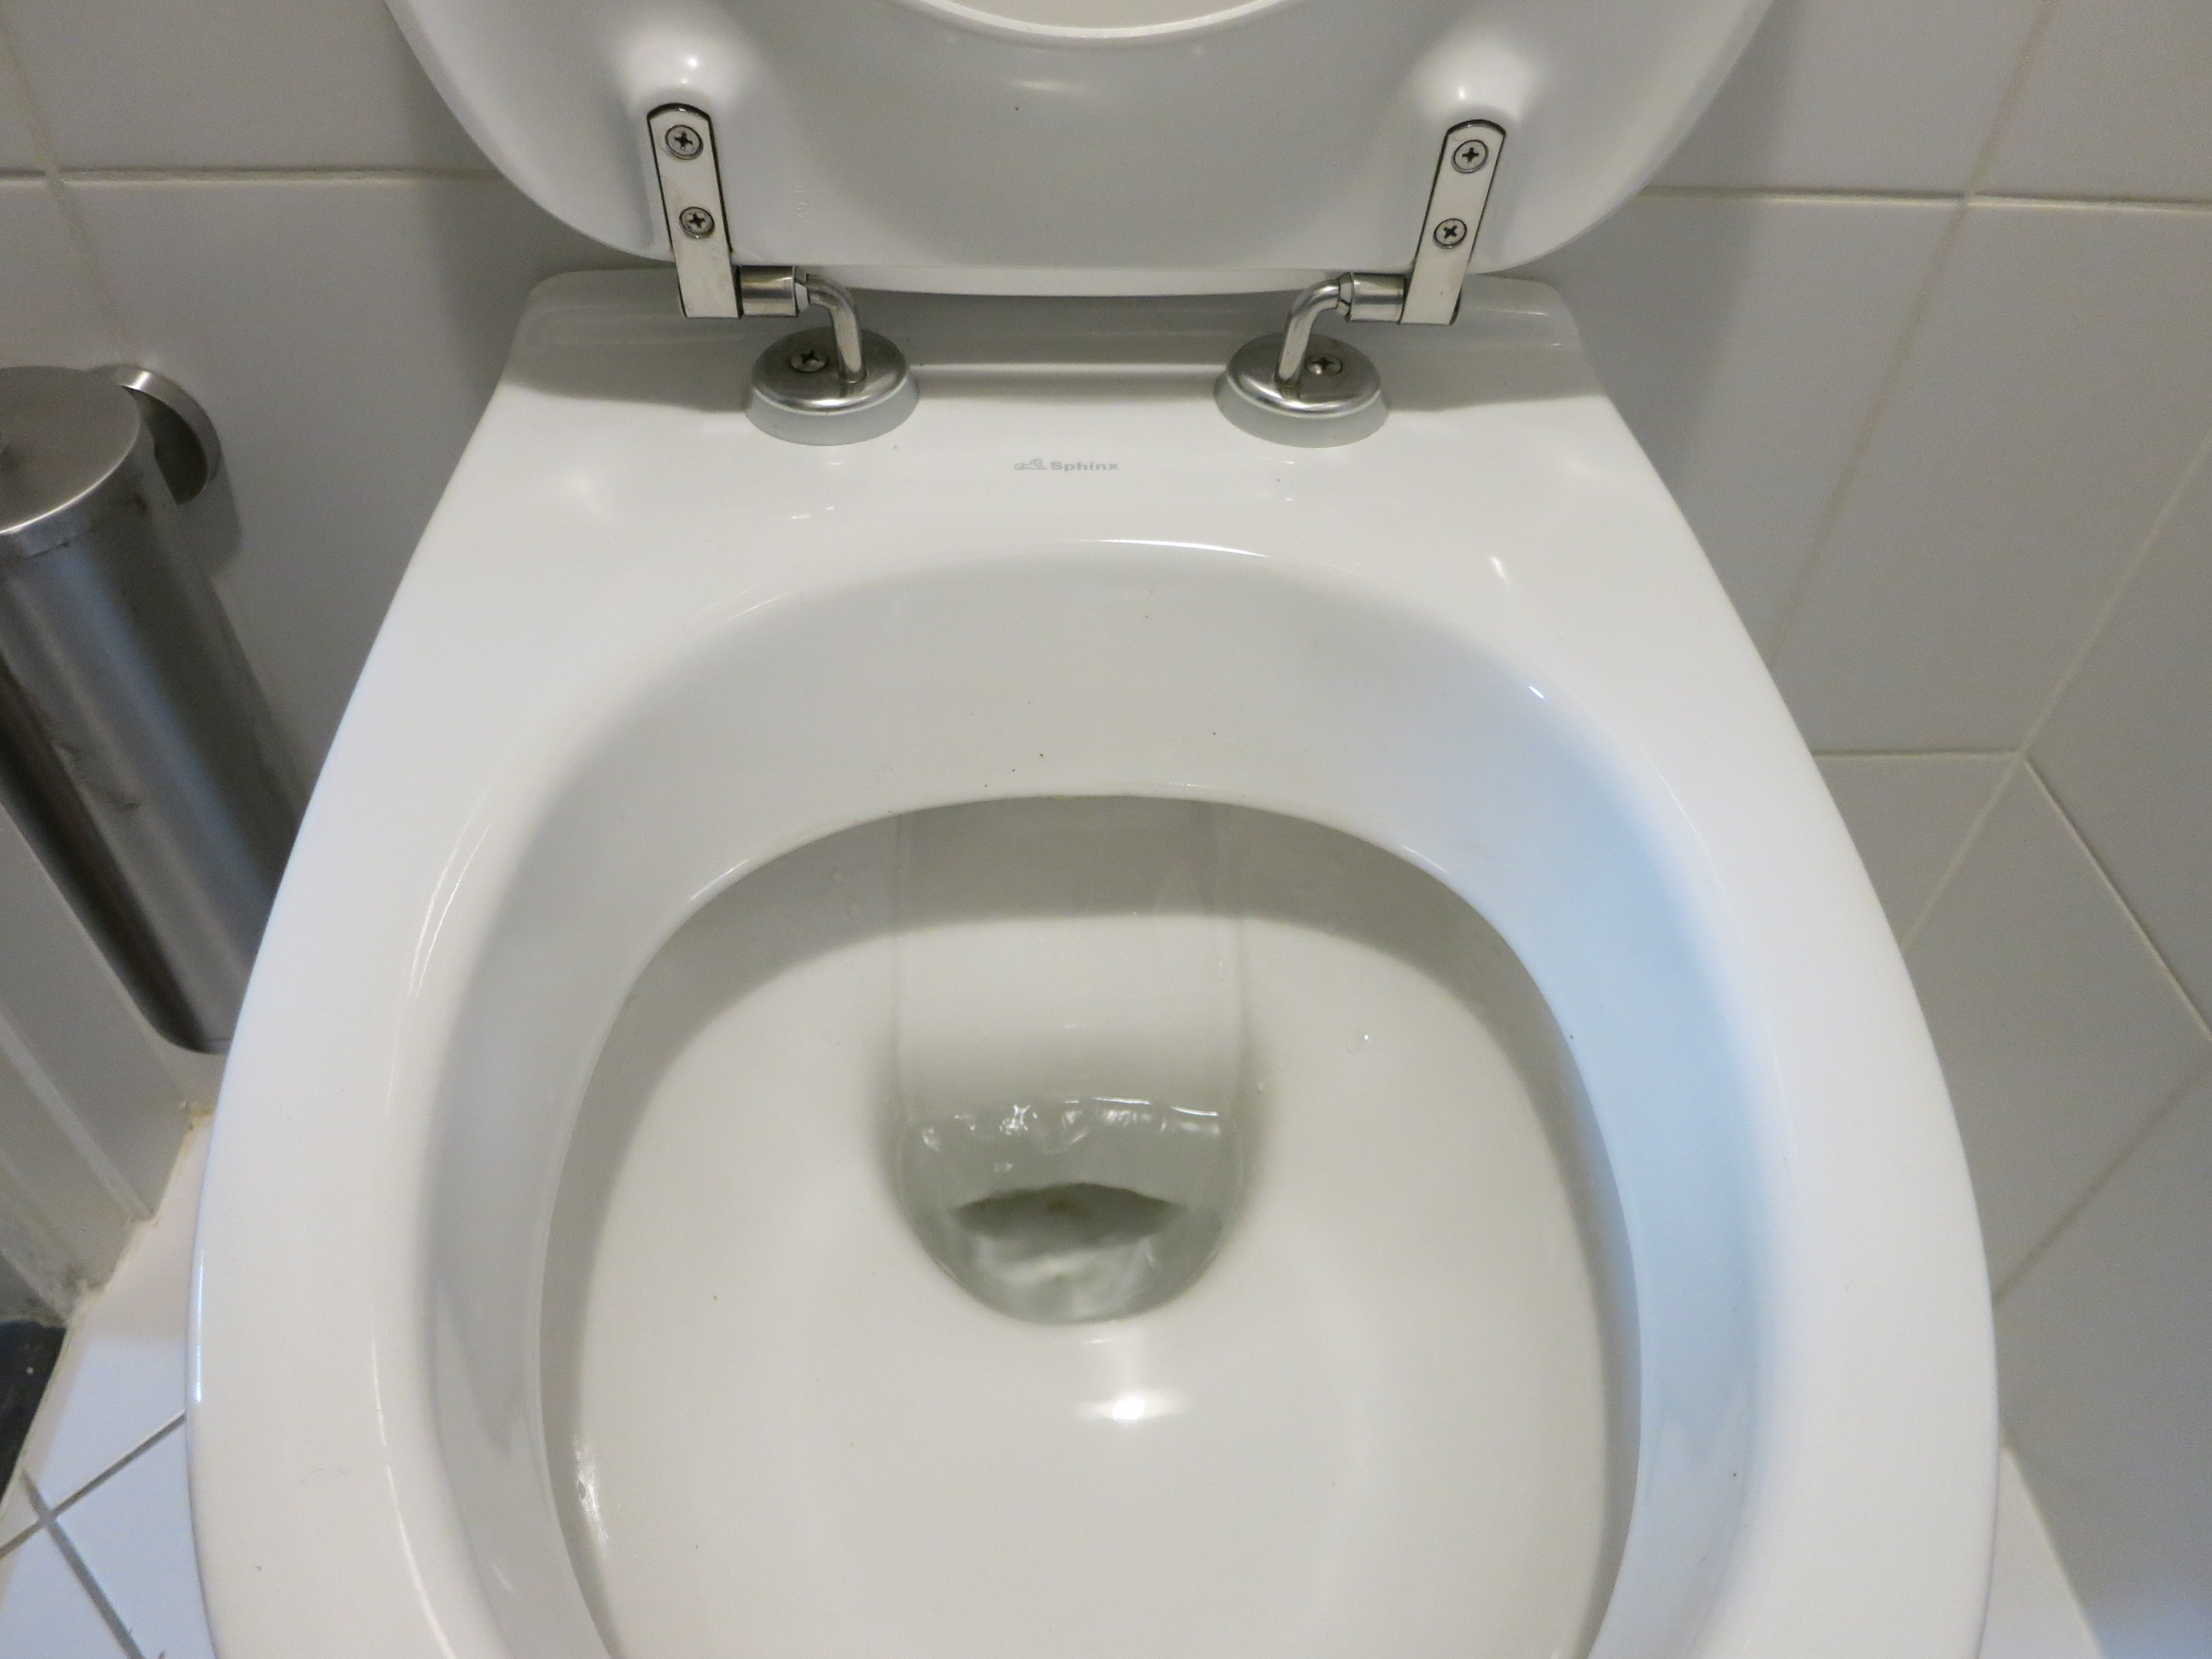 Ruïneren ga werken juni Loopt het water door in je wc? – Bas blogt